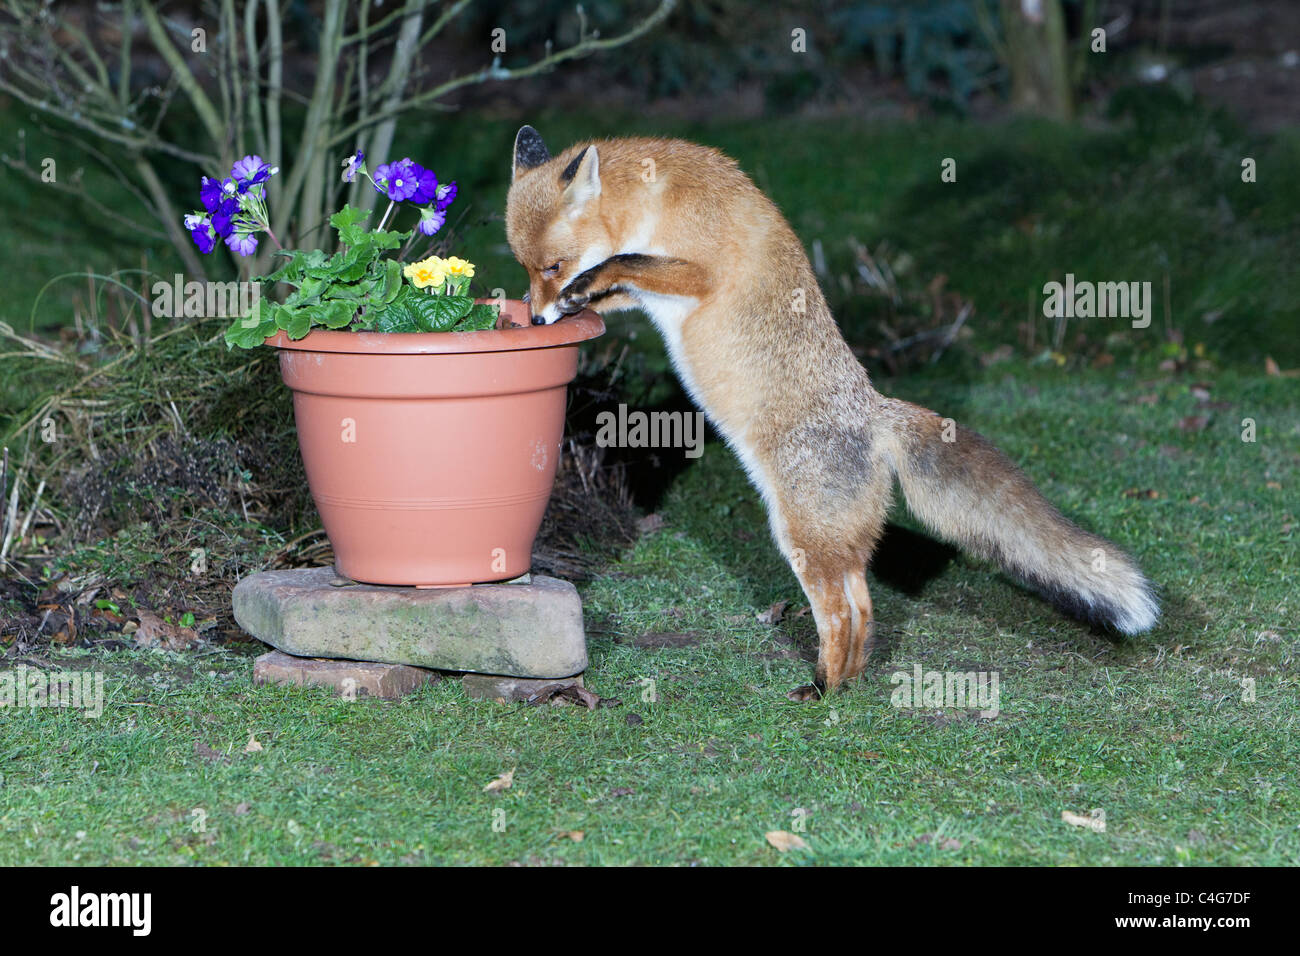 Unión el zorro (Vulpes vulpes), en busca de alimento en la maceta Foto de stock